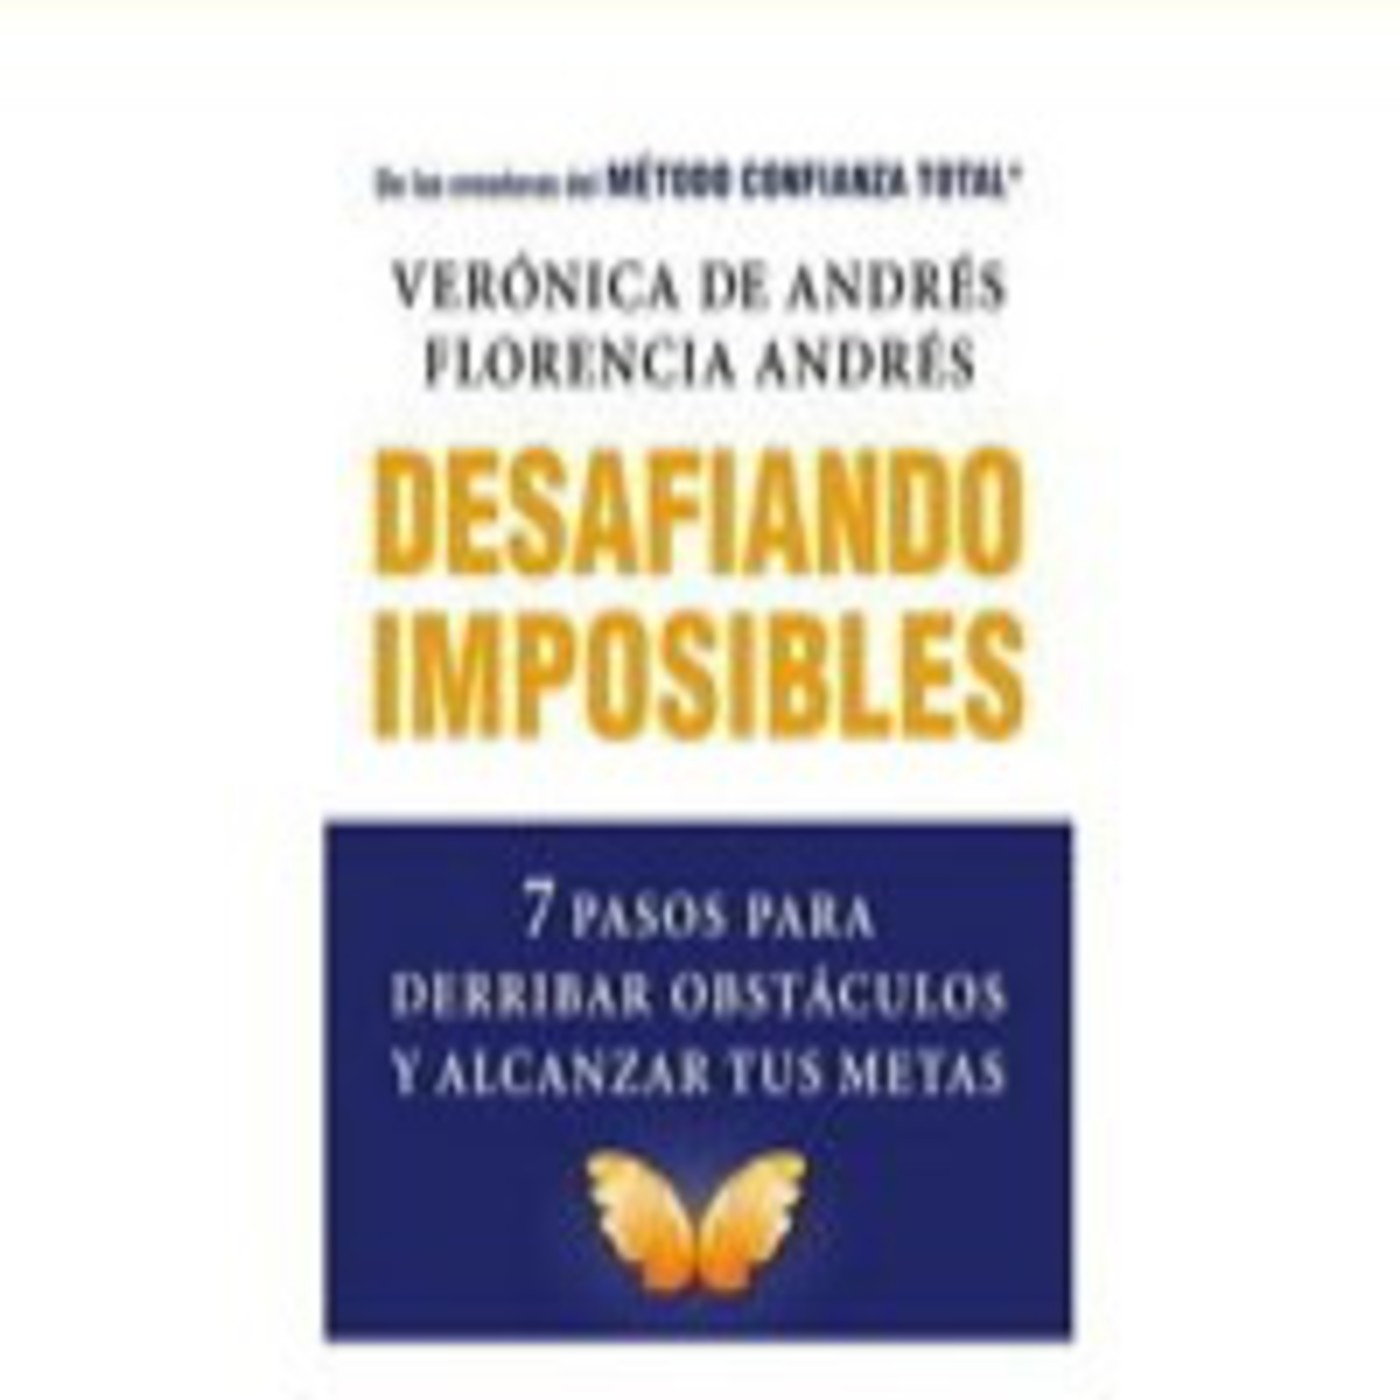 Desafiando Imposibles - Verónica de Andrés